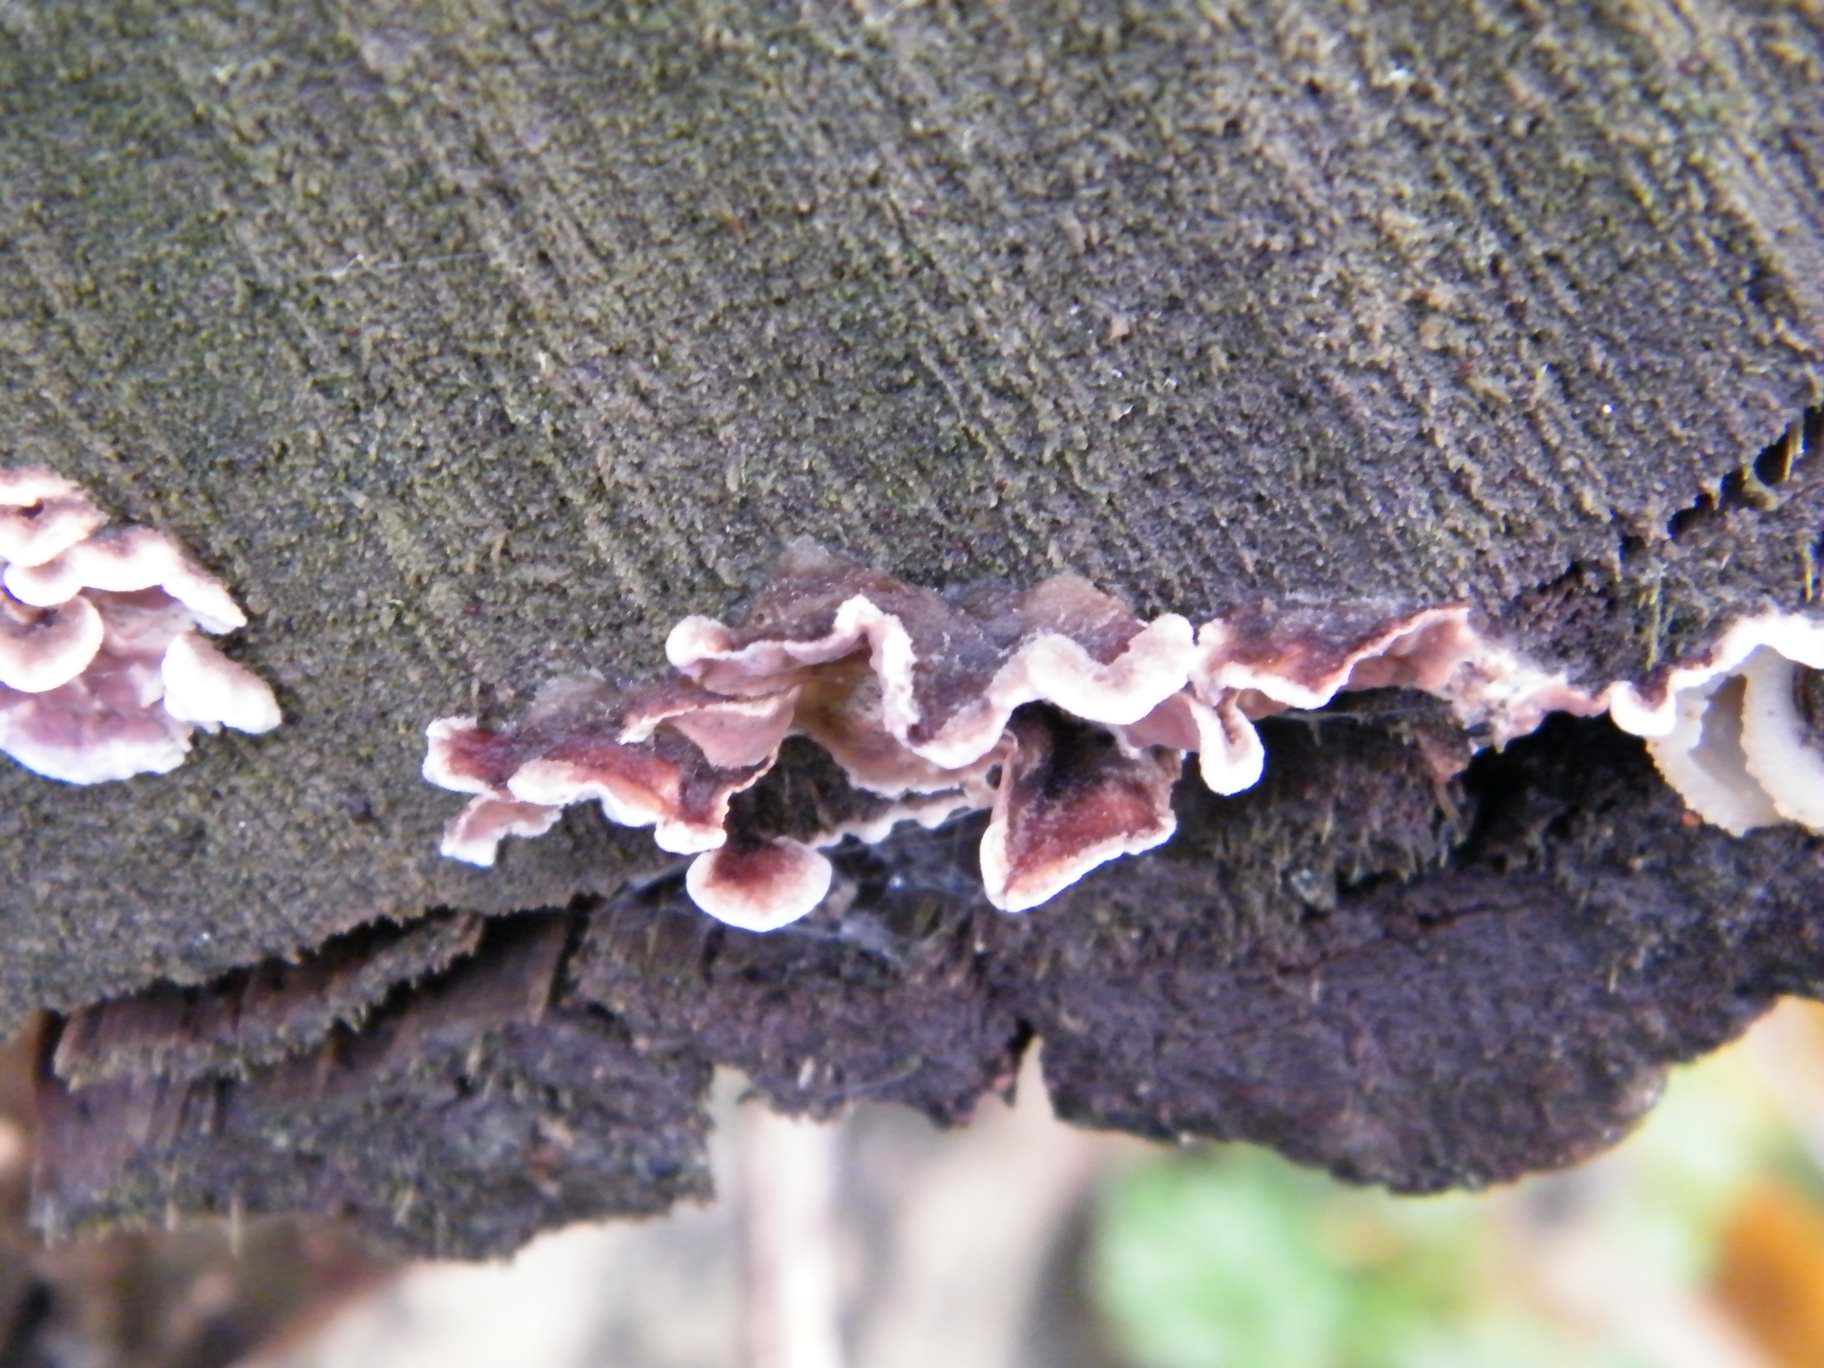 Silverleaf Fungus - Chondrostereum purpureum species information page